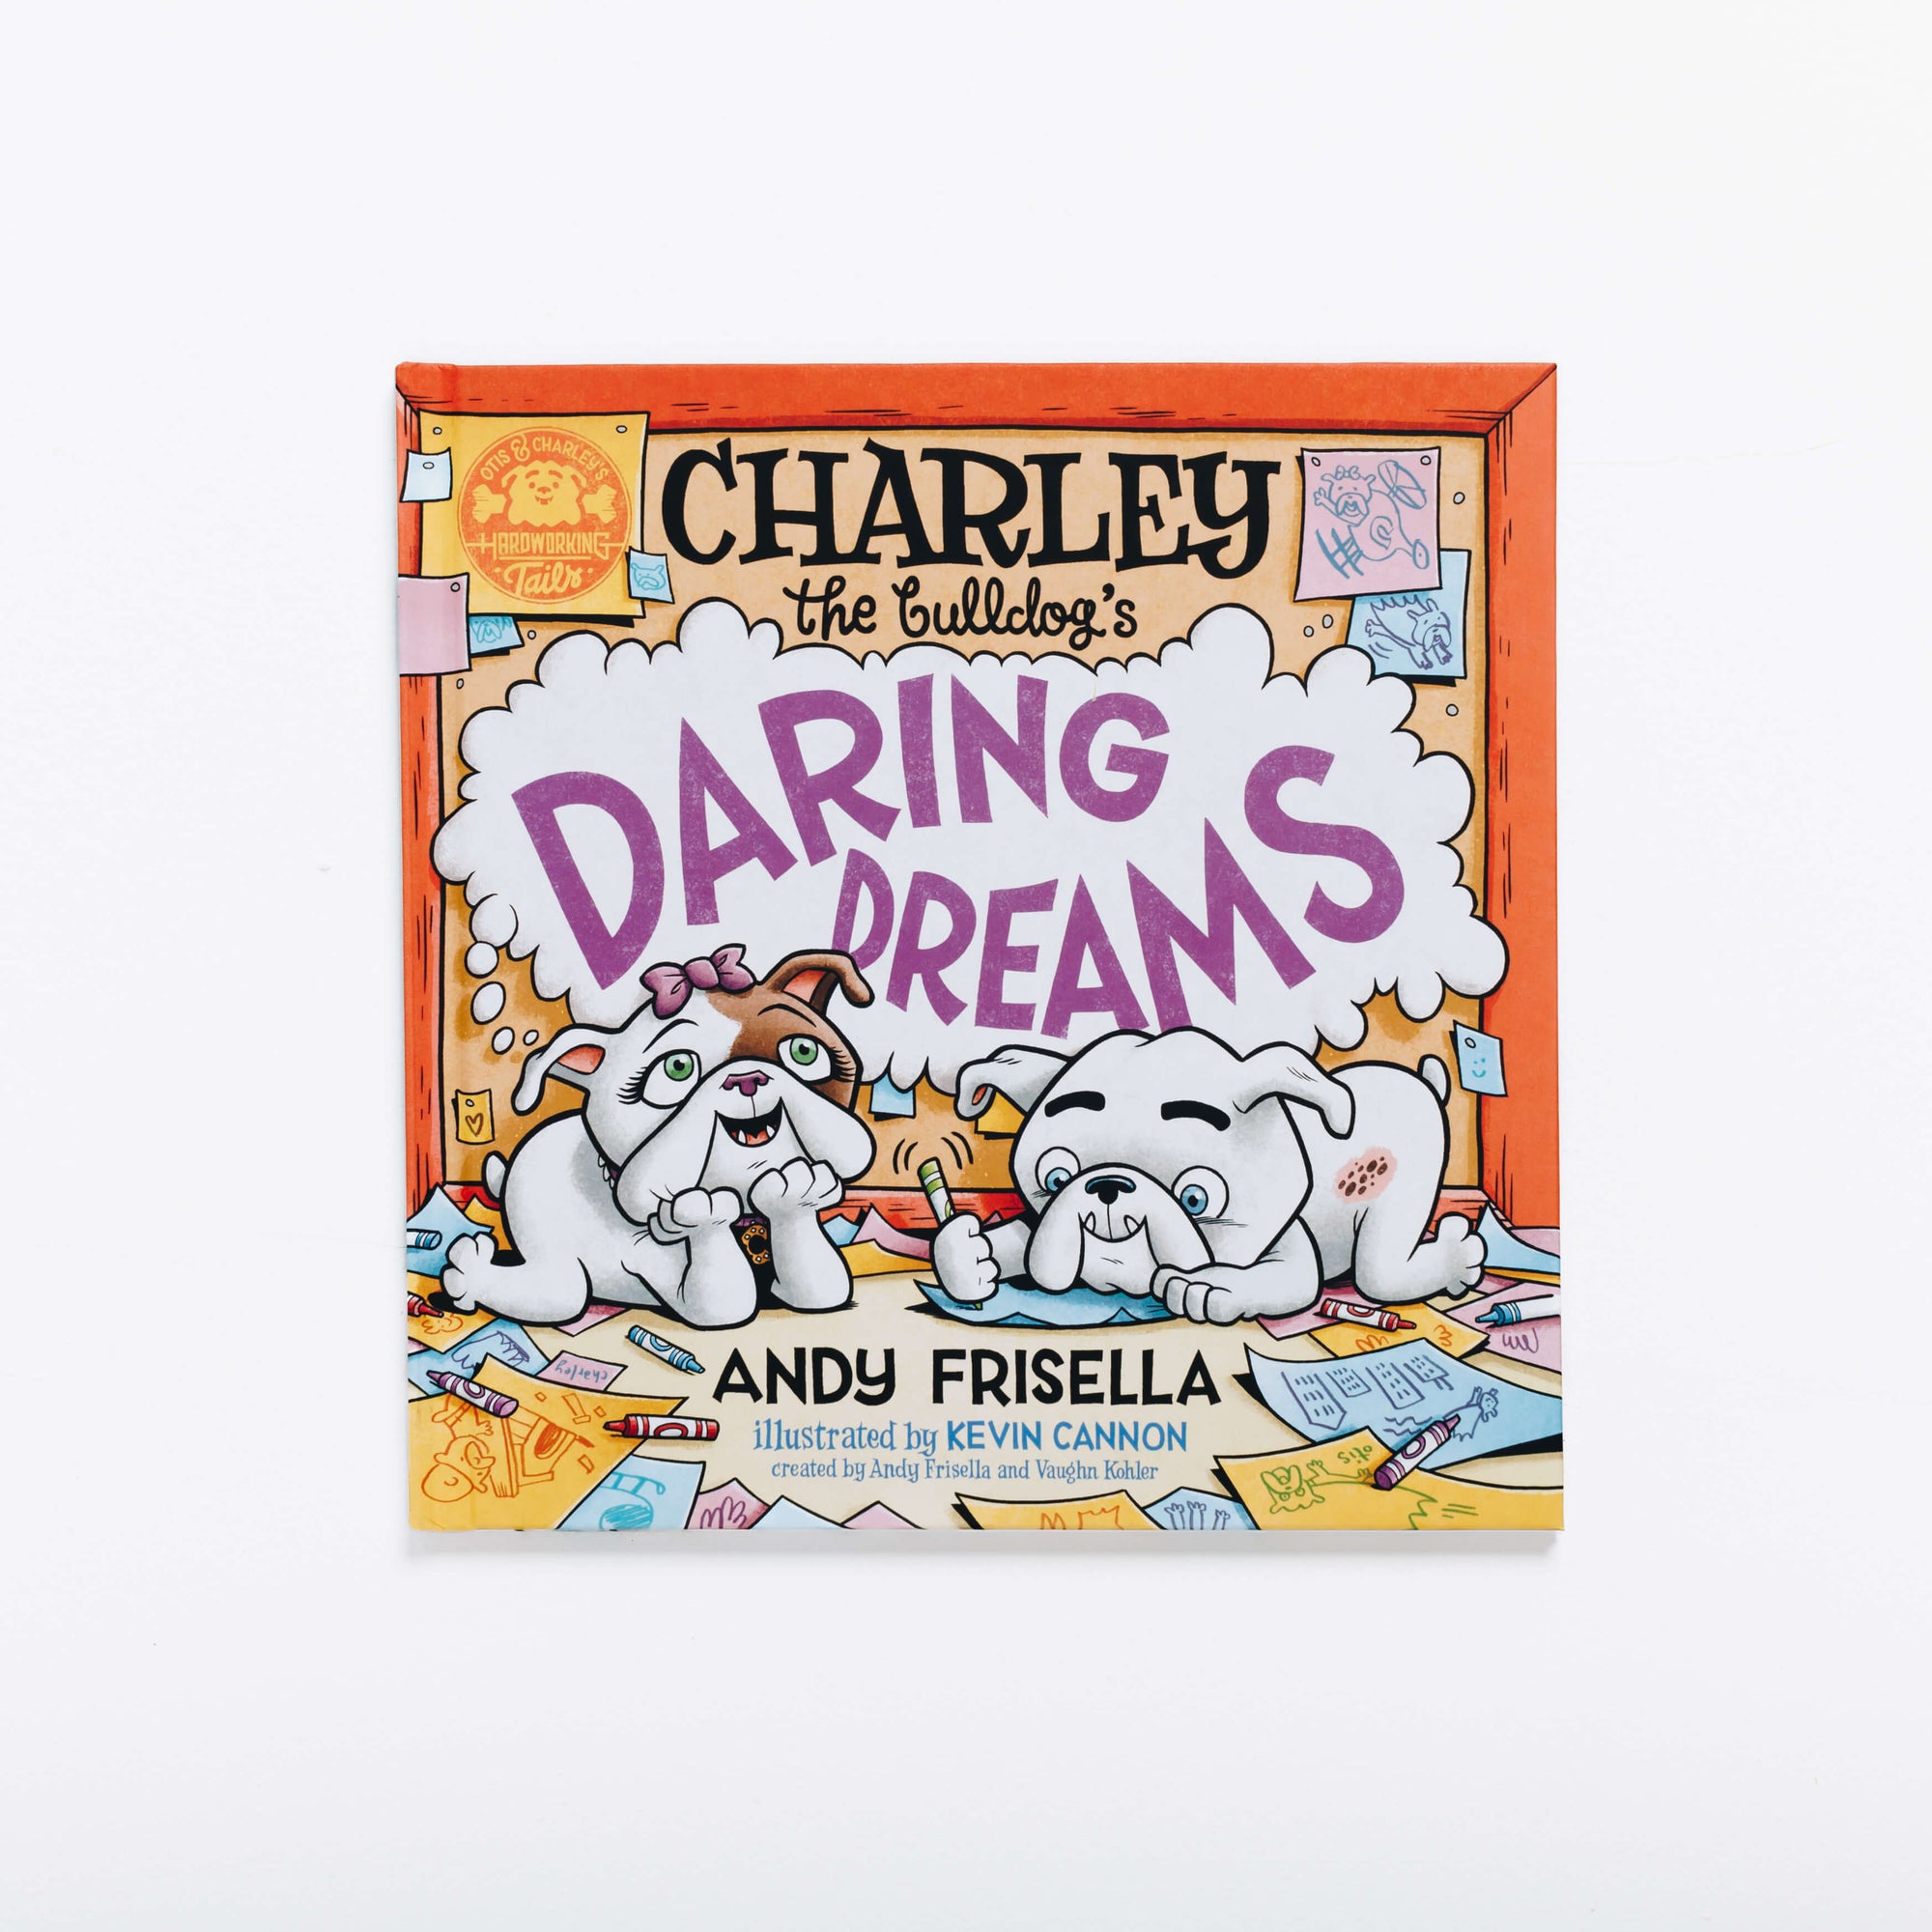 Charley the Bulldog’s Daring Dreams